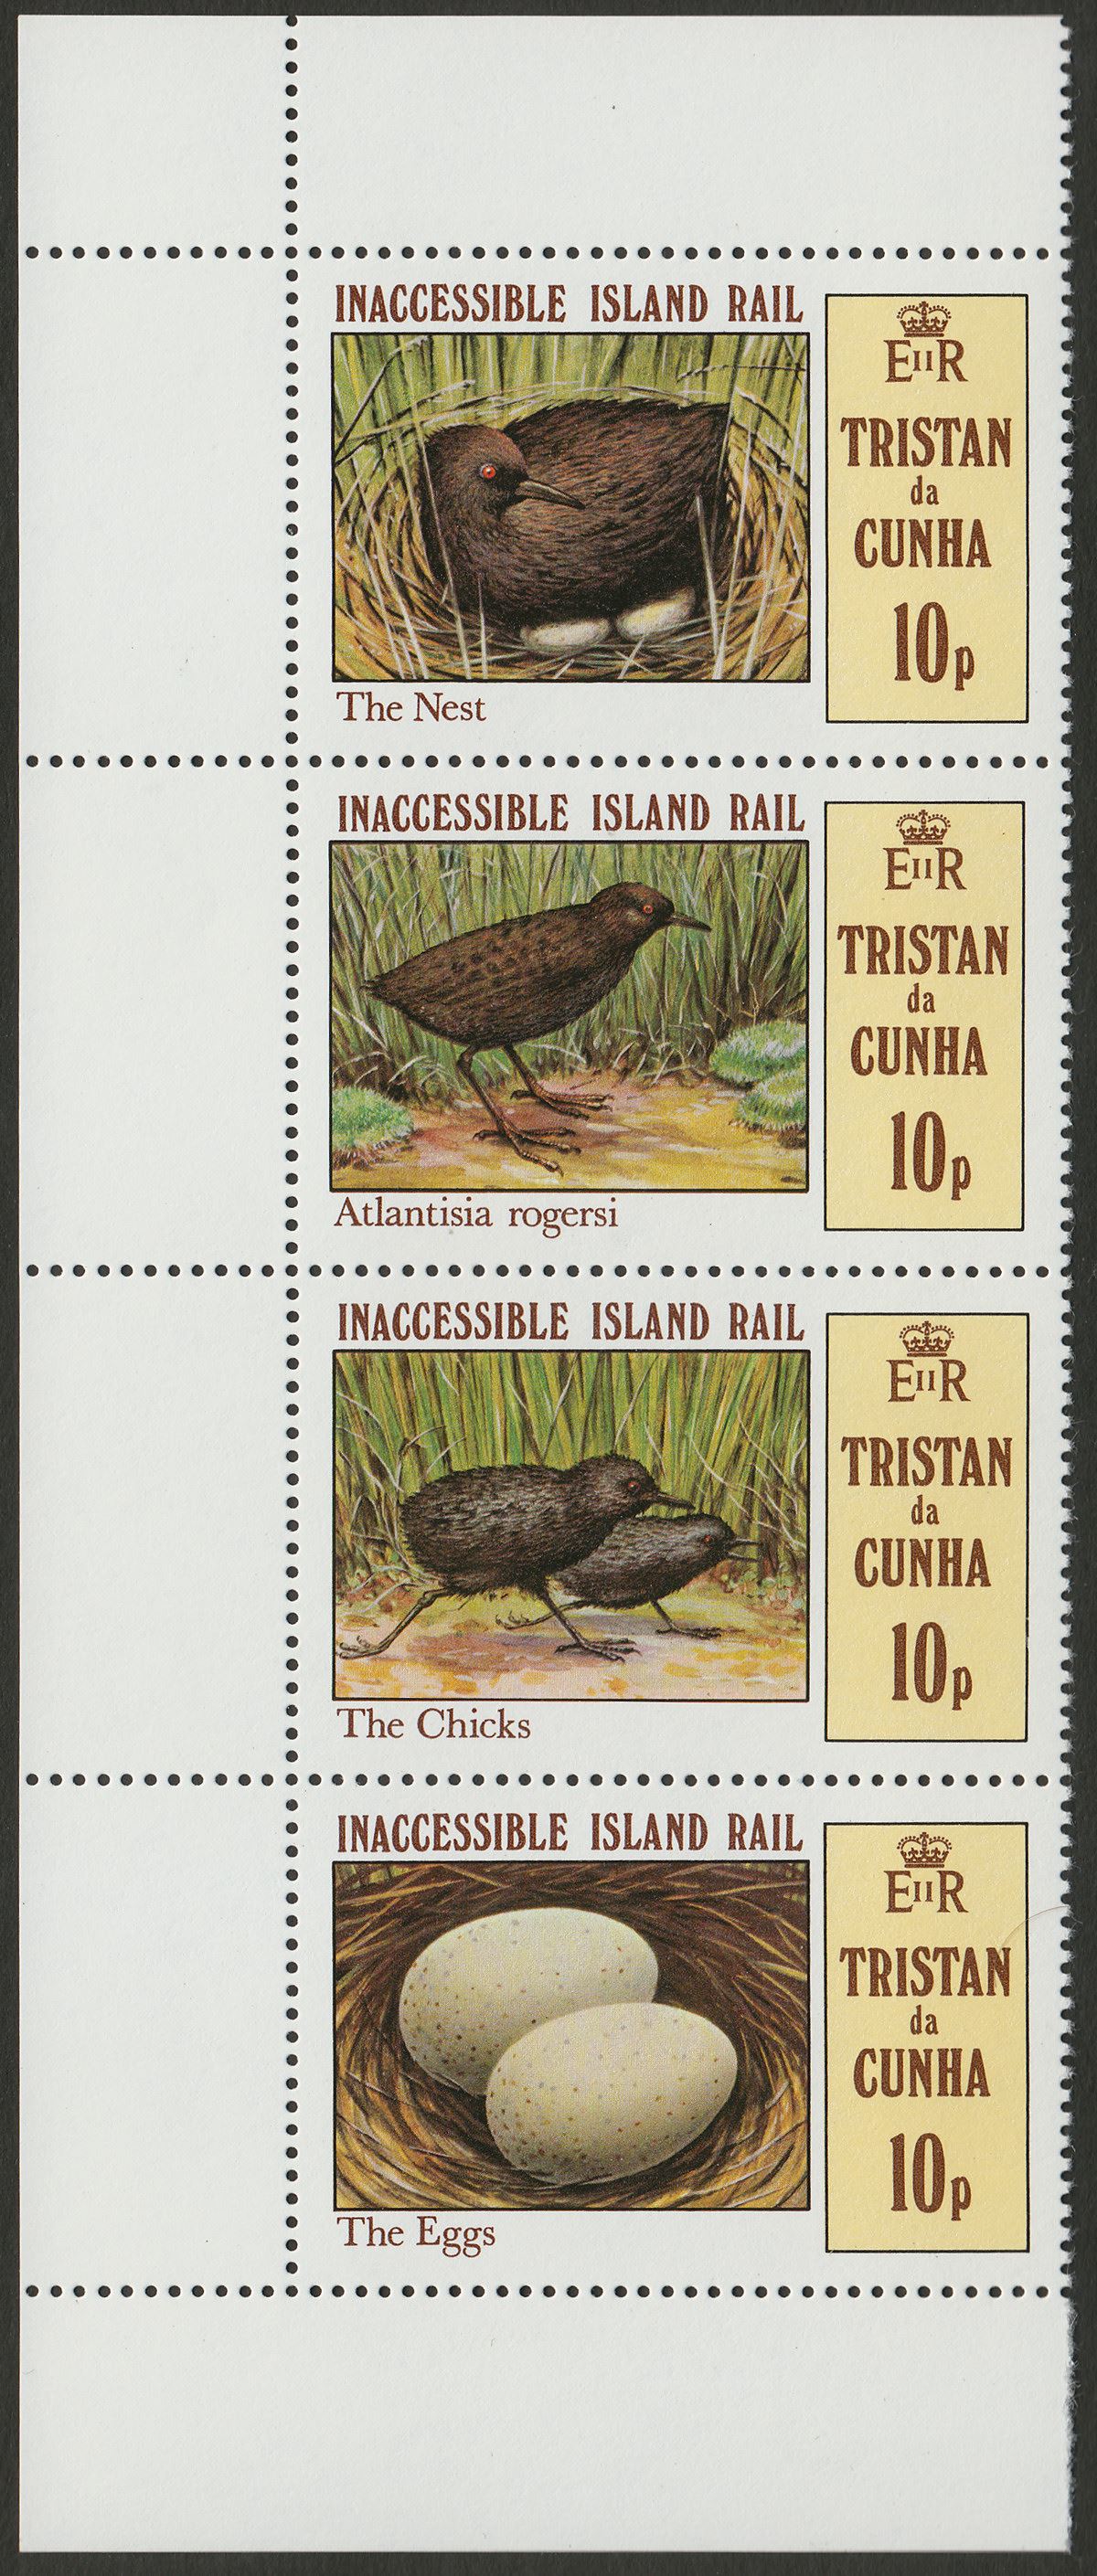 Tristan da Cunha 1981 QEII Inaccessible Rail 10p Strip wmk Inverted Mint SG315aw